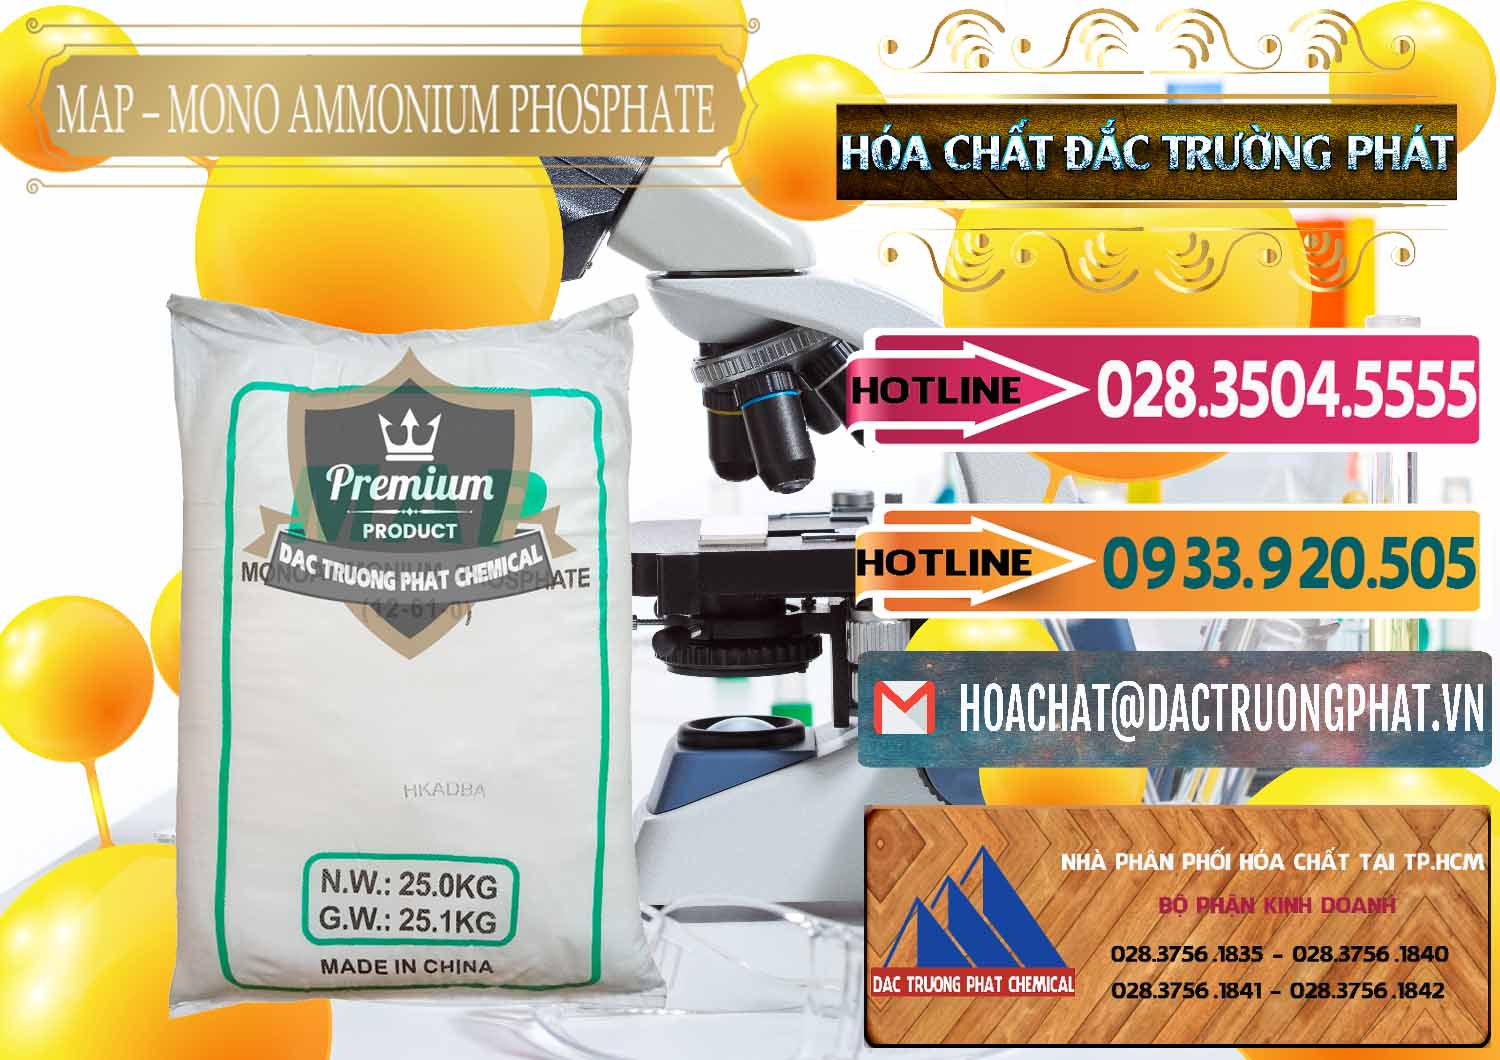 Cty bán _ phân phối Mono Ammonium Phosphate - MAP 12-61-0 Trung Quốc China - 0093 - Nơi chuyên kinh doanh và cung cấp hóa chất tại TP.HCM - dactruongphat.vn